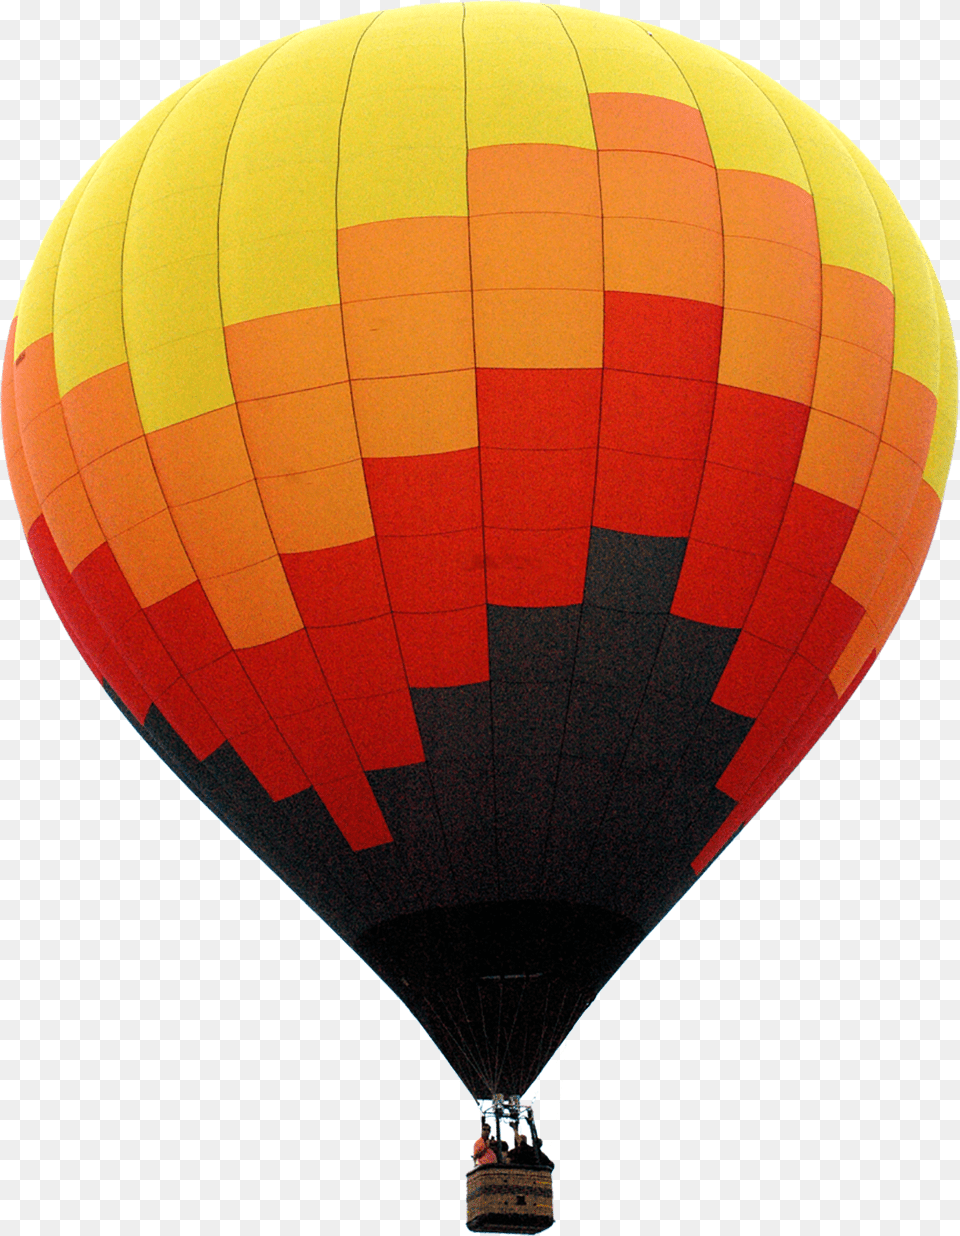 Transparency Air Balloon Image Hot Air Balloon, Aircraft, Hot Air Balloon, Transportation, Vehicle Free Png